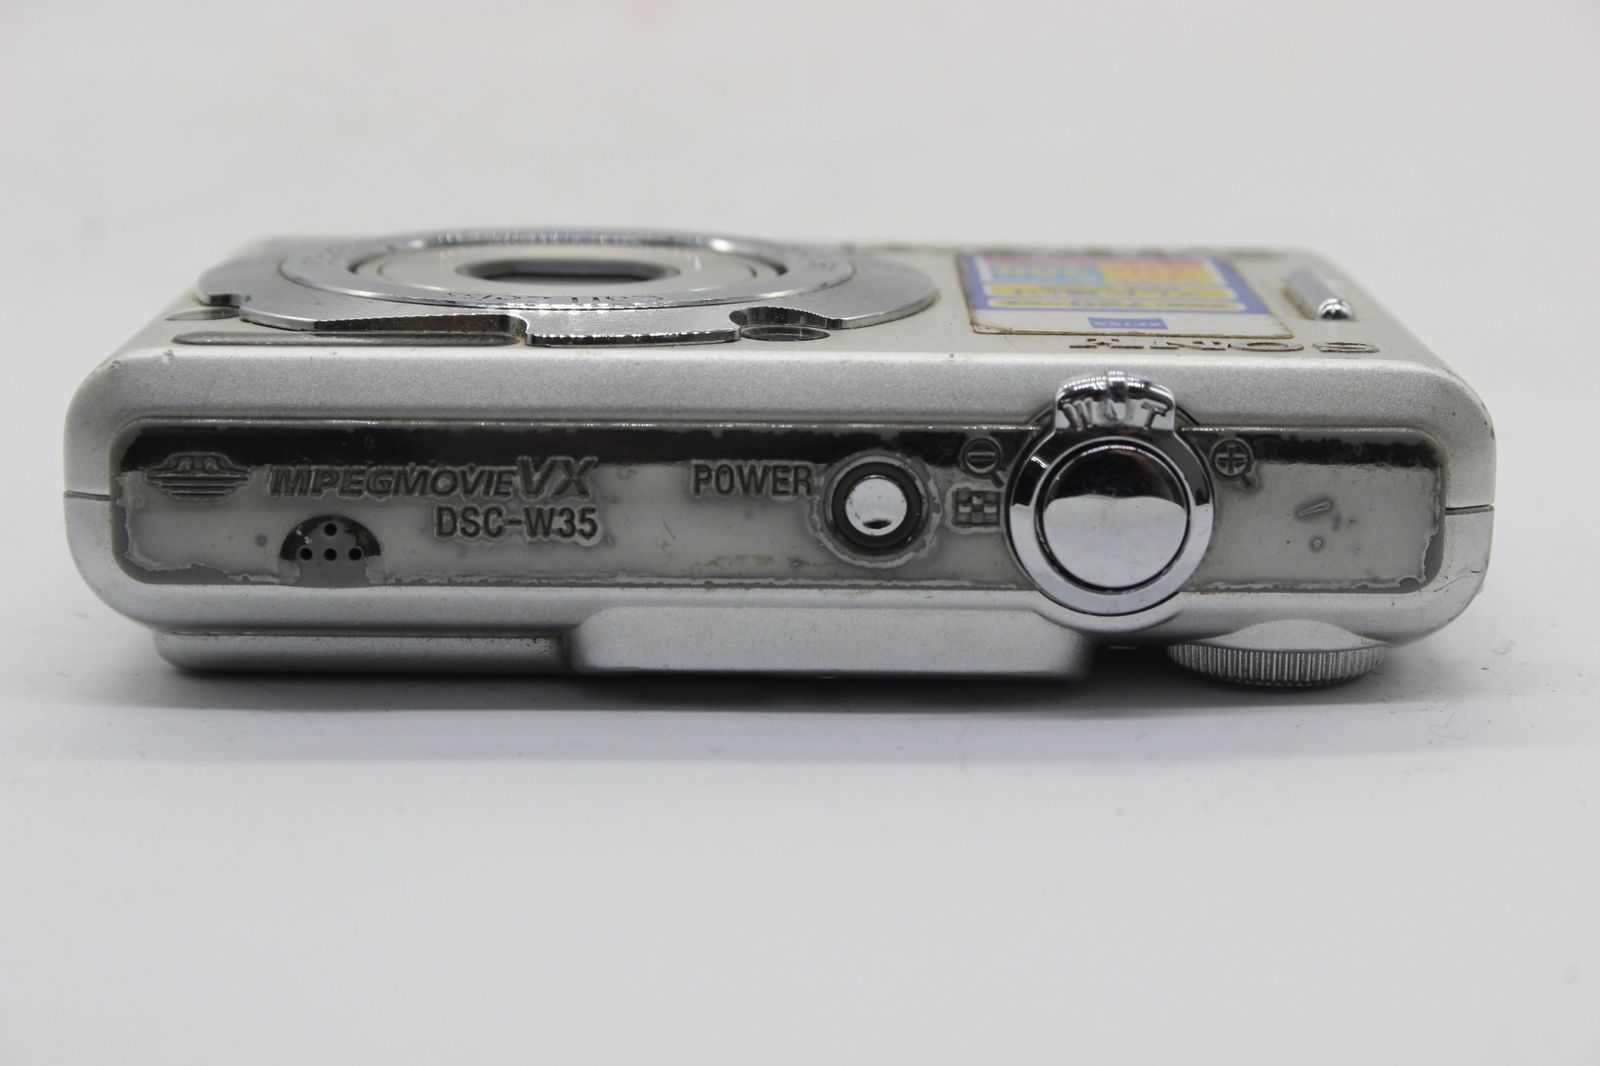 SONY 【返品保証】 ソニー SONY Cyber-shot DSC-W35 3x バッテリー付き コンパクトデジタルカメラ s9920